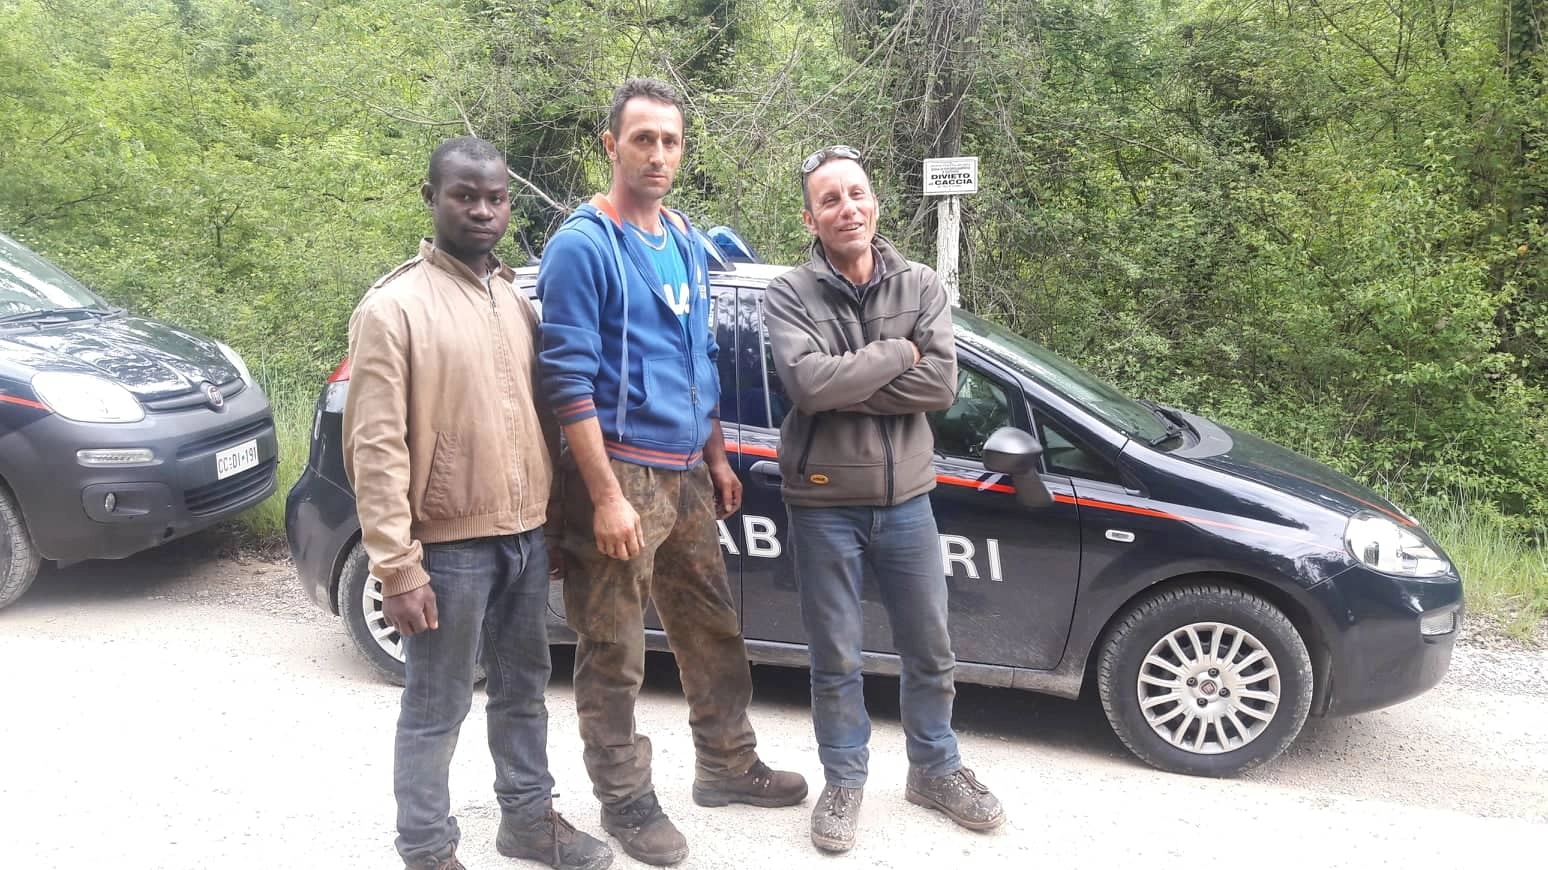 Omar Silla, Daniel Aurel Popovich e Giacomo Pini hanno prestato i primi soccorsi ai feriti